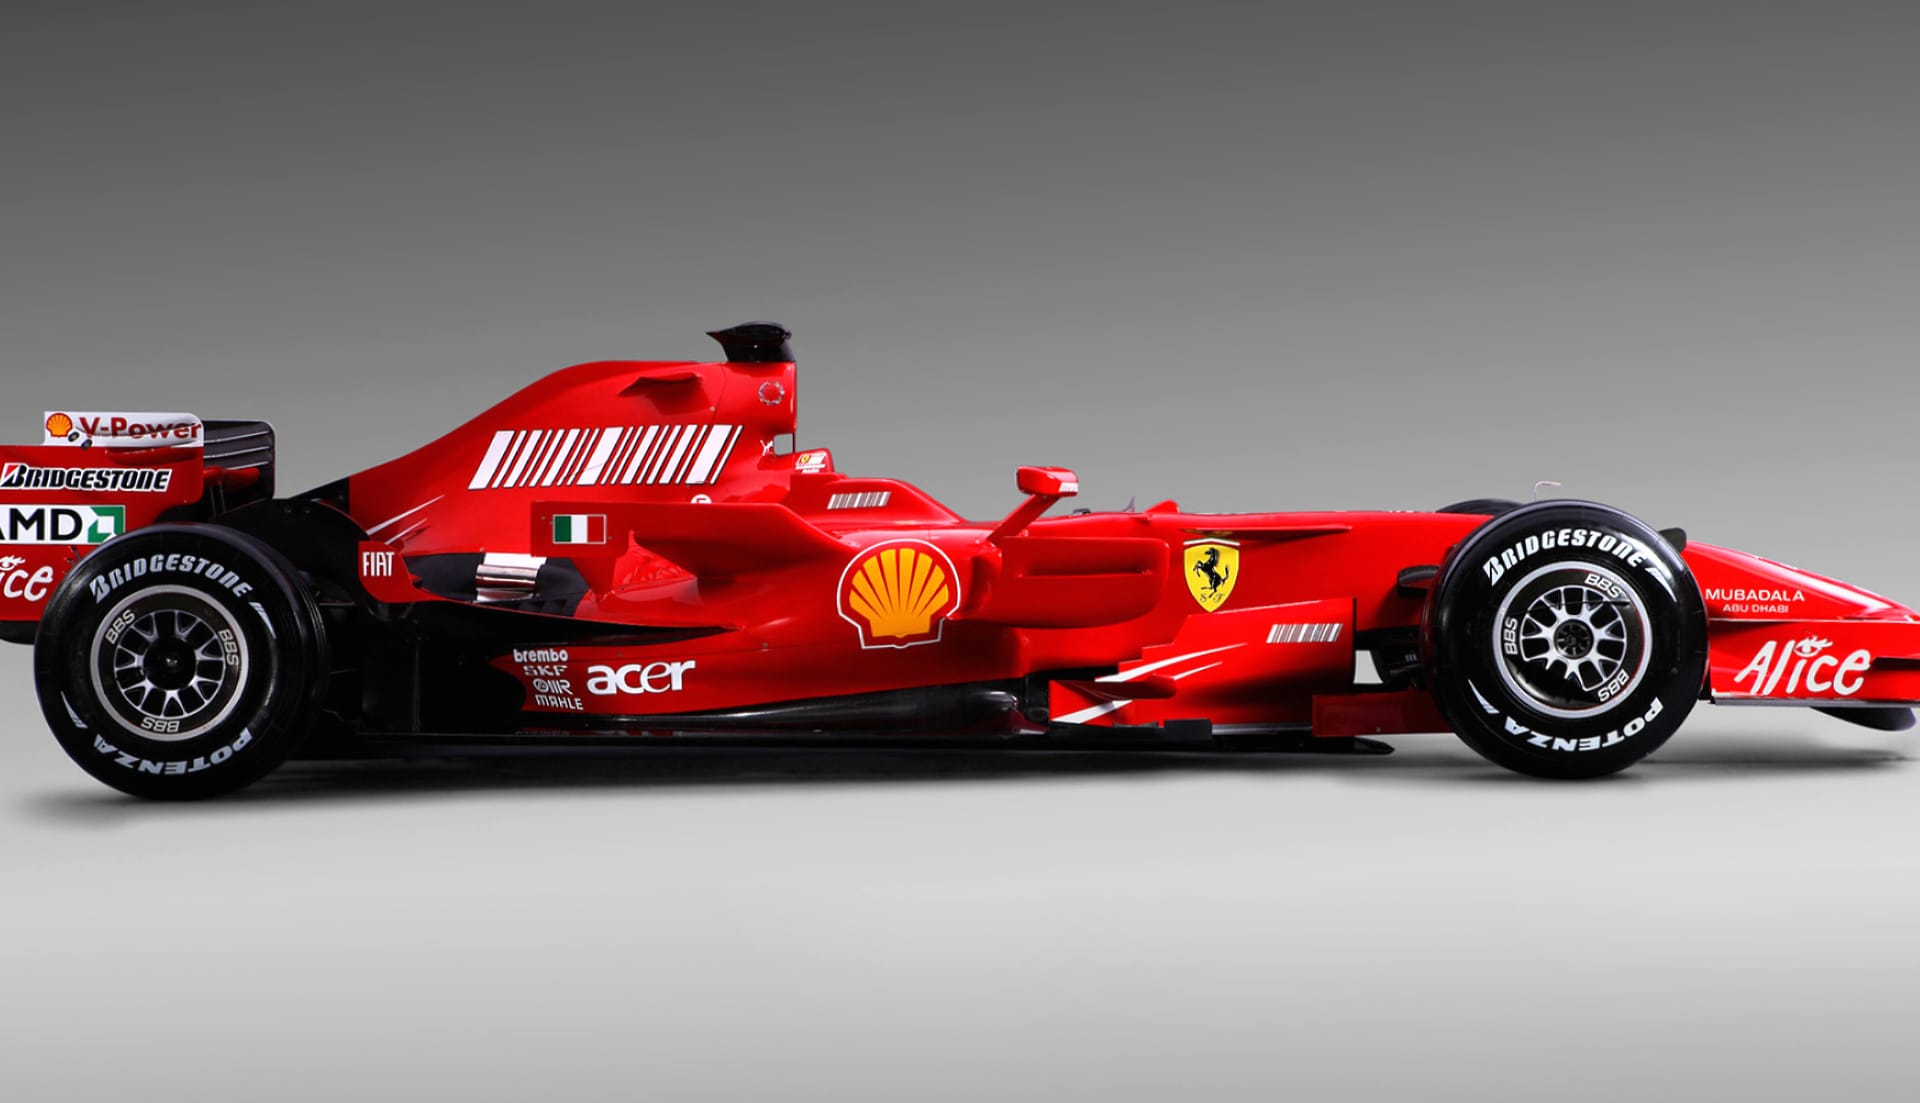 Ferrari F2008 at 1280 x 960 size wallpapers HD quality